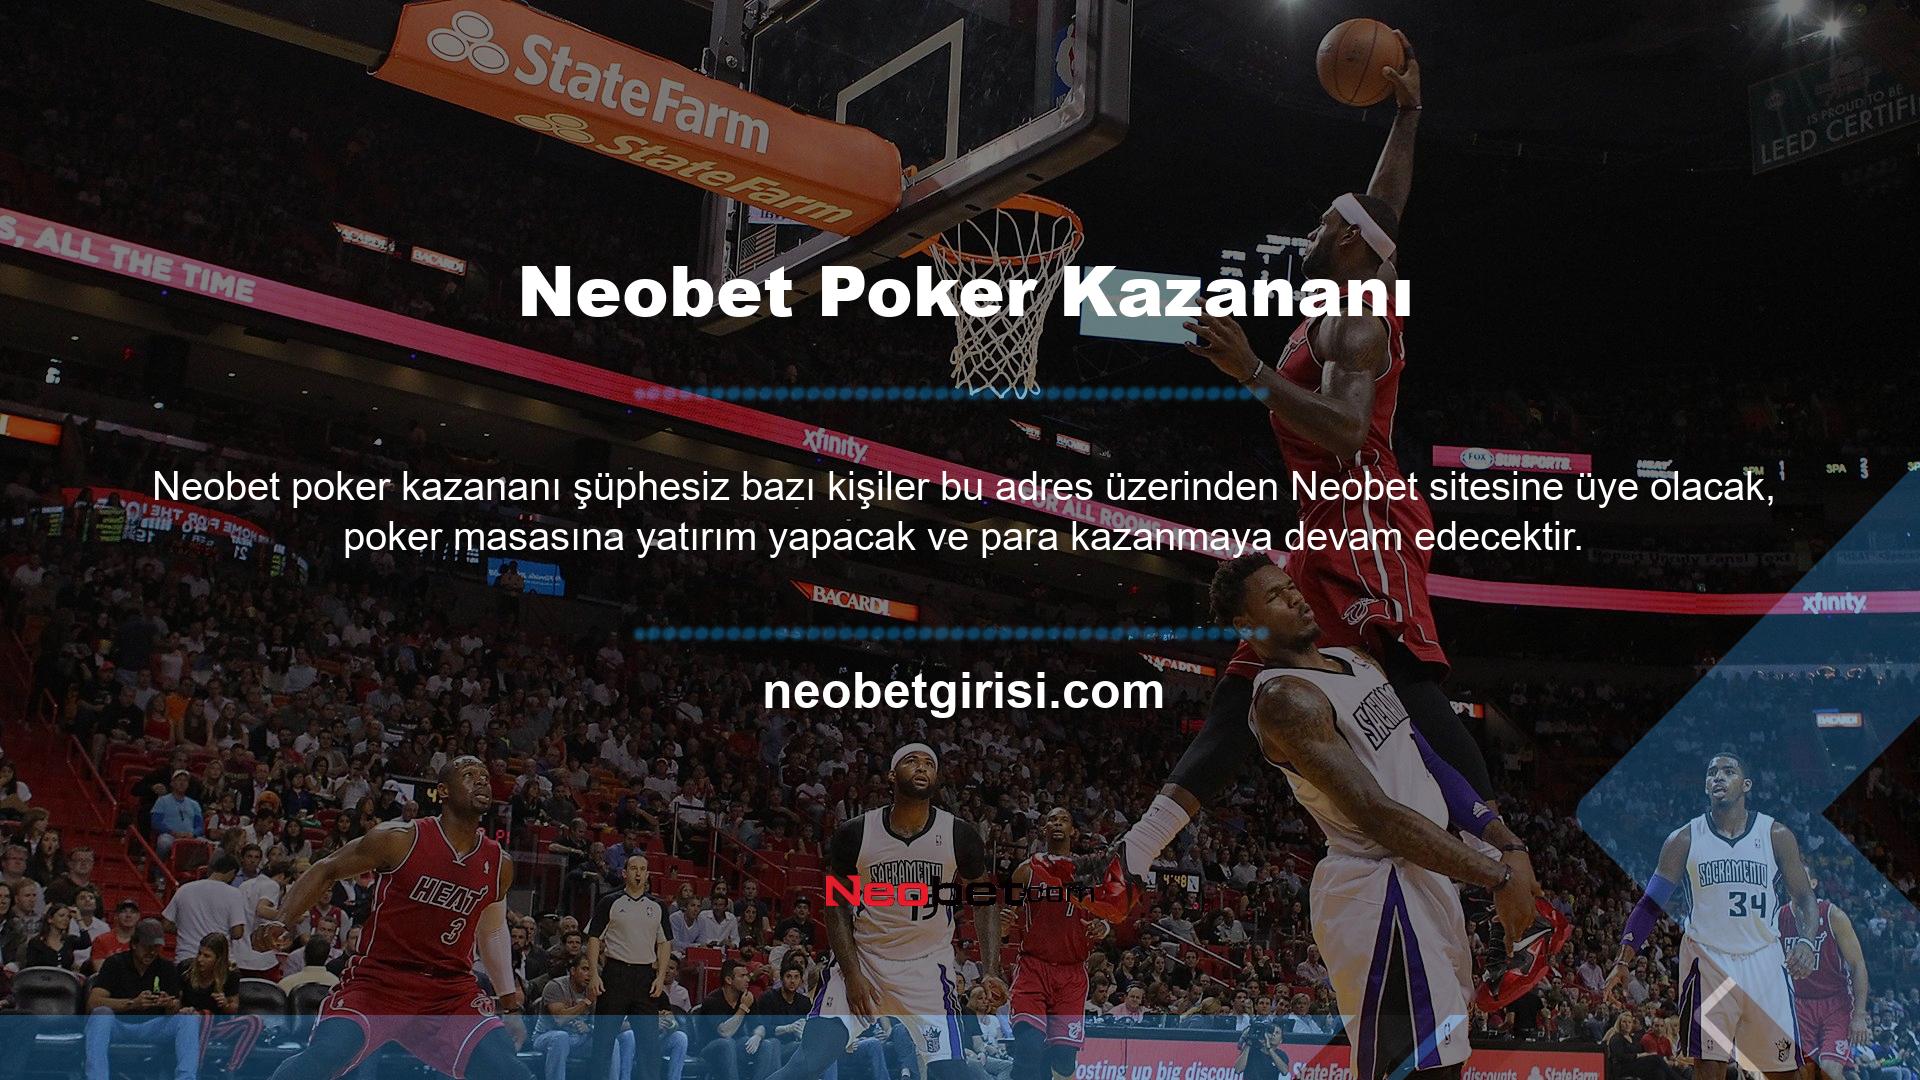 Şanslı Neobet Poker Neobet Poker kazananları sitenin ana sayfasında duyurulacaktır